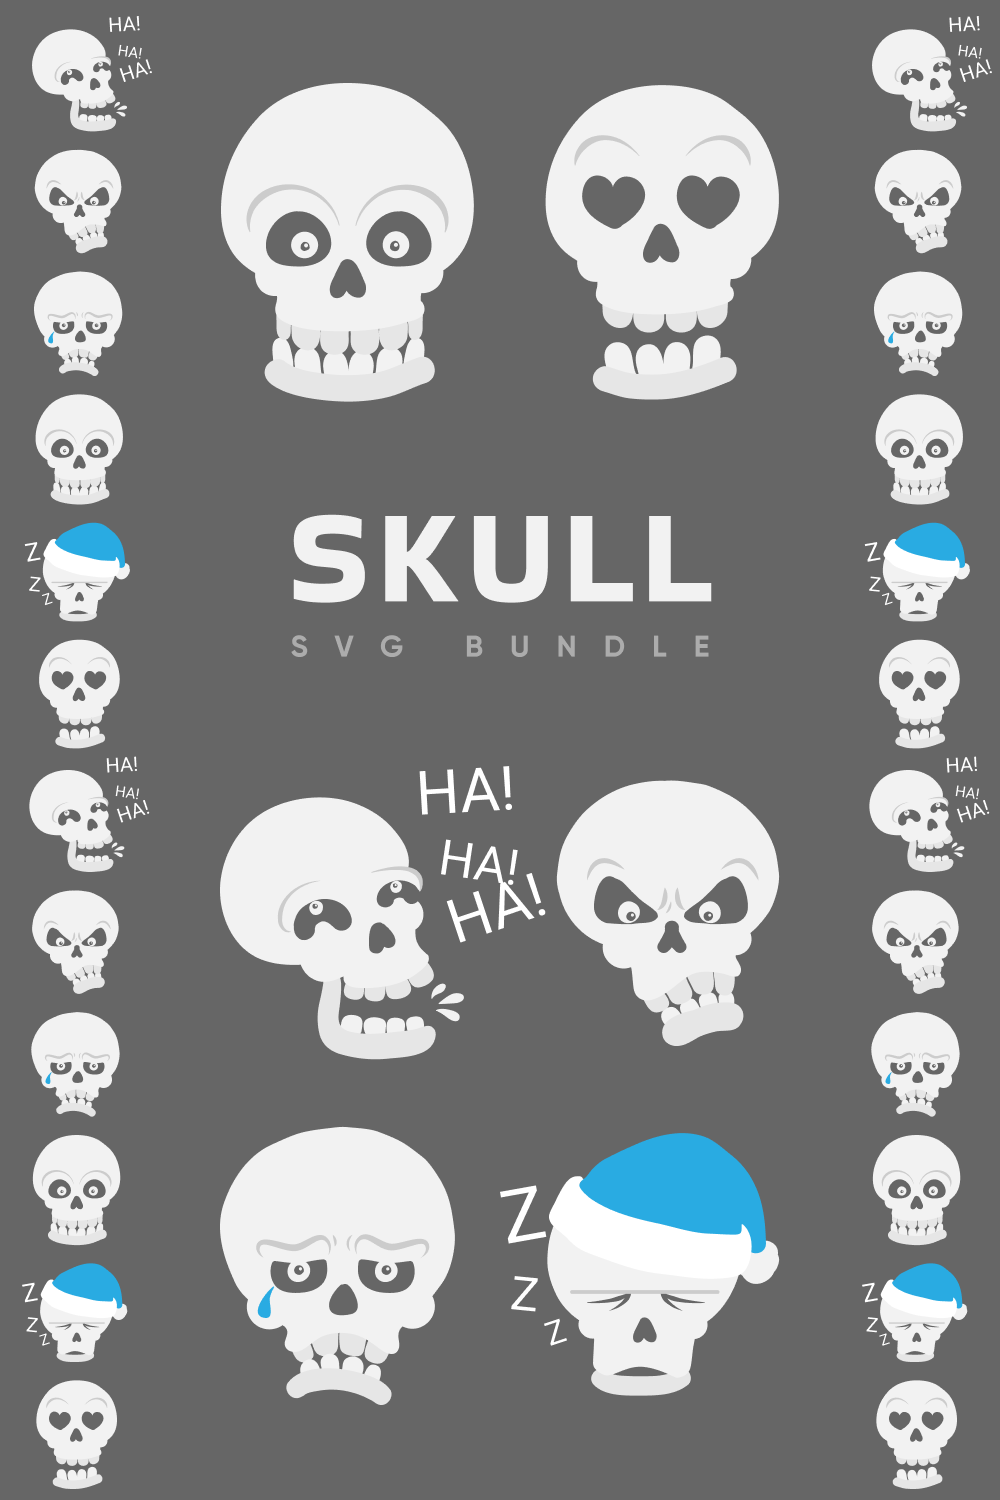 Skull SVG Bundle pinterest image.